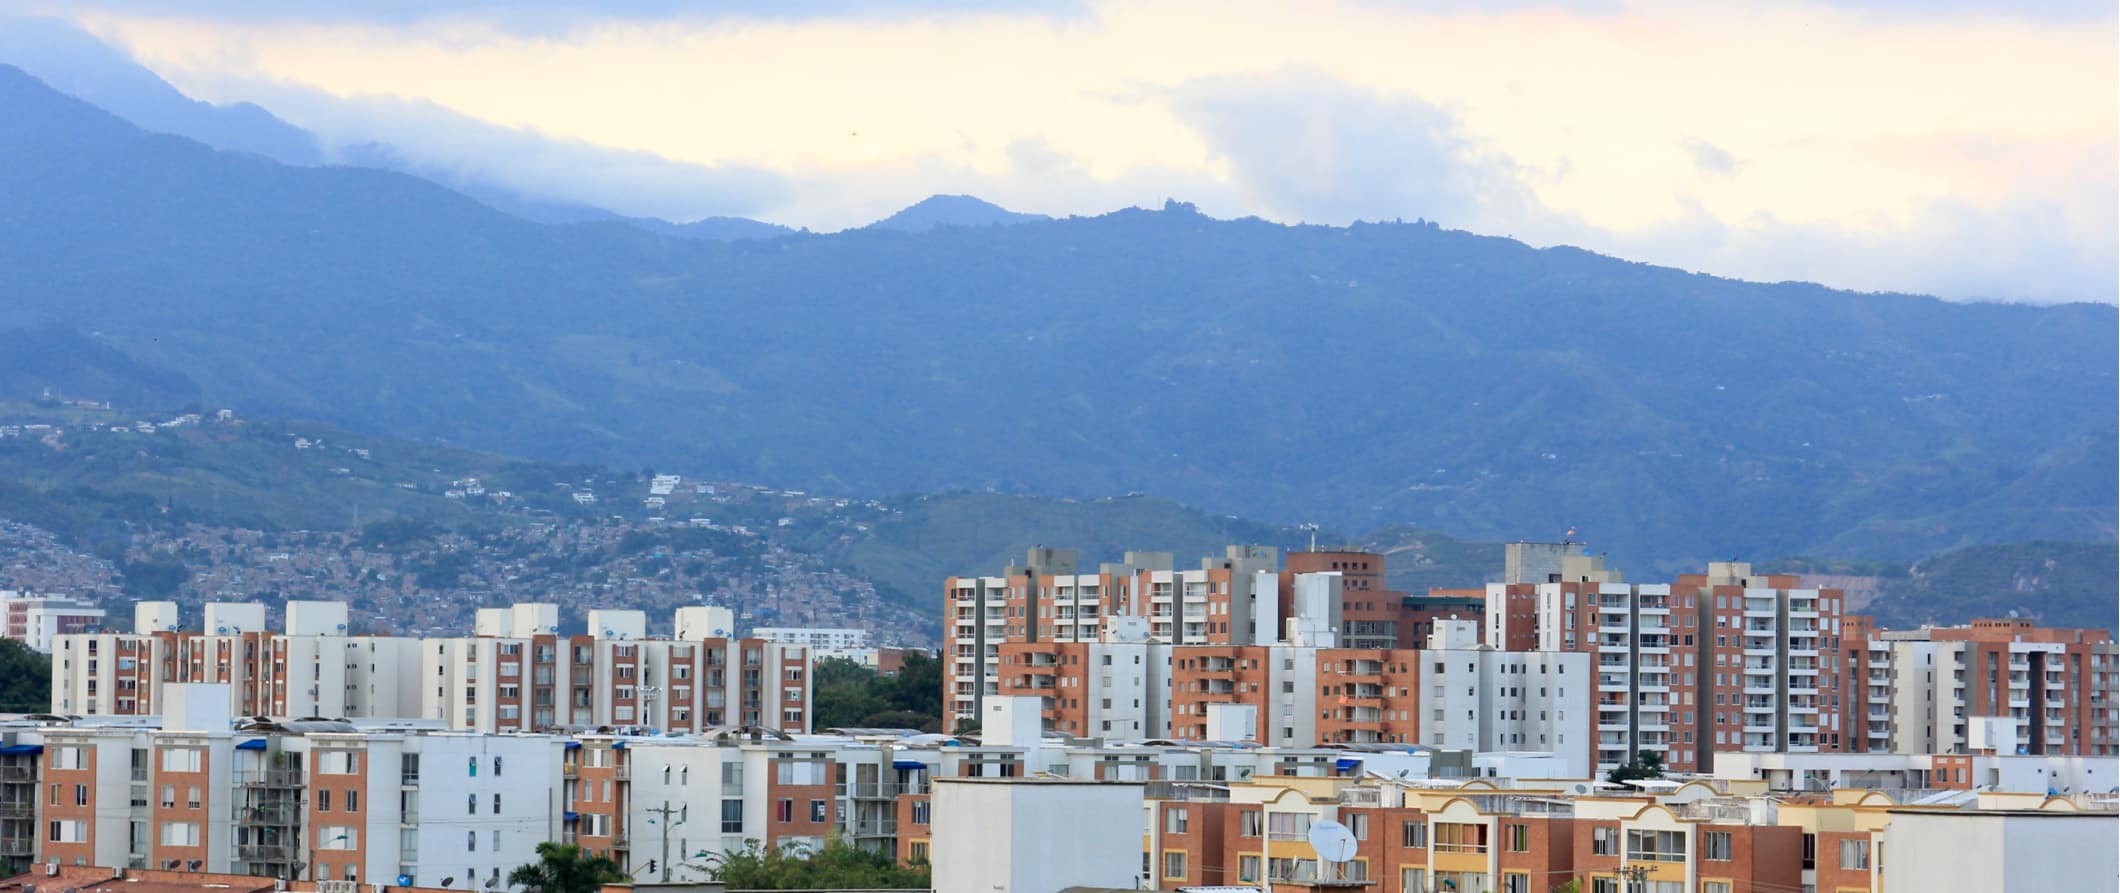 Horizonte de Cali, Colômbia, com montanhas imponentes ao longe